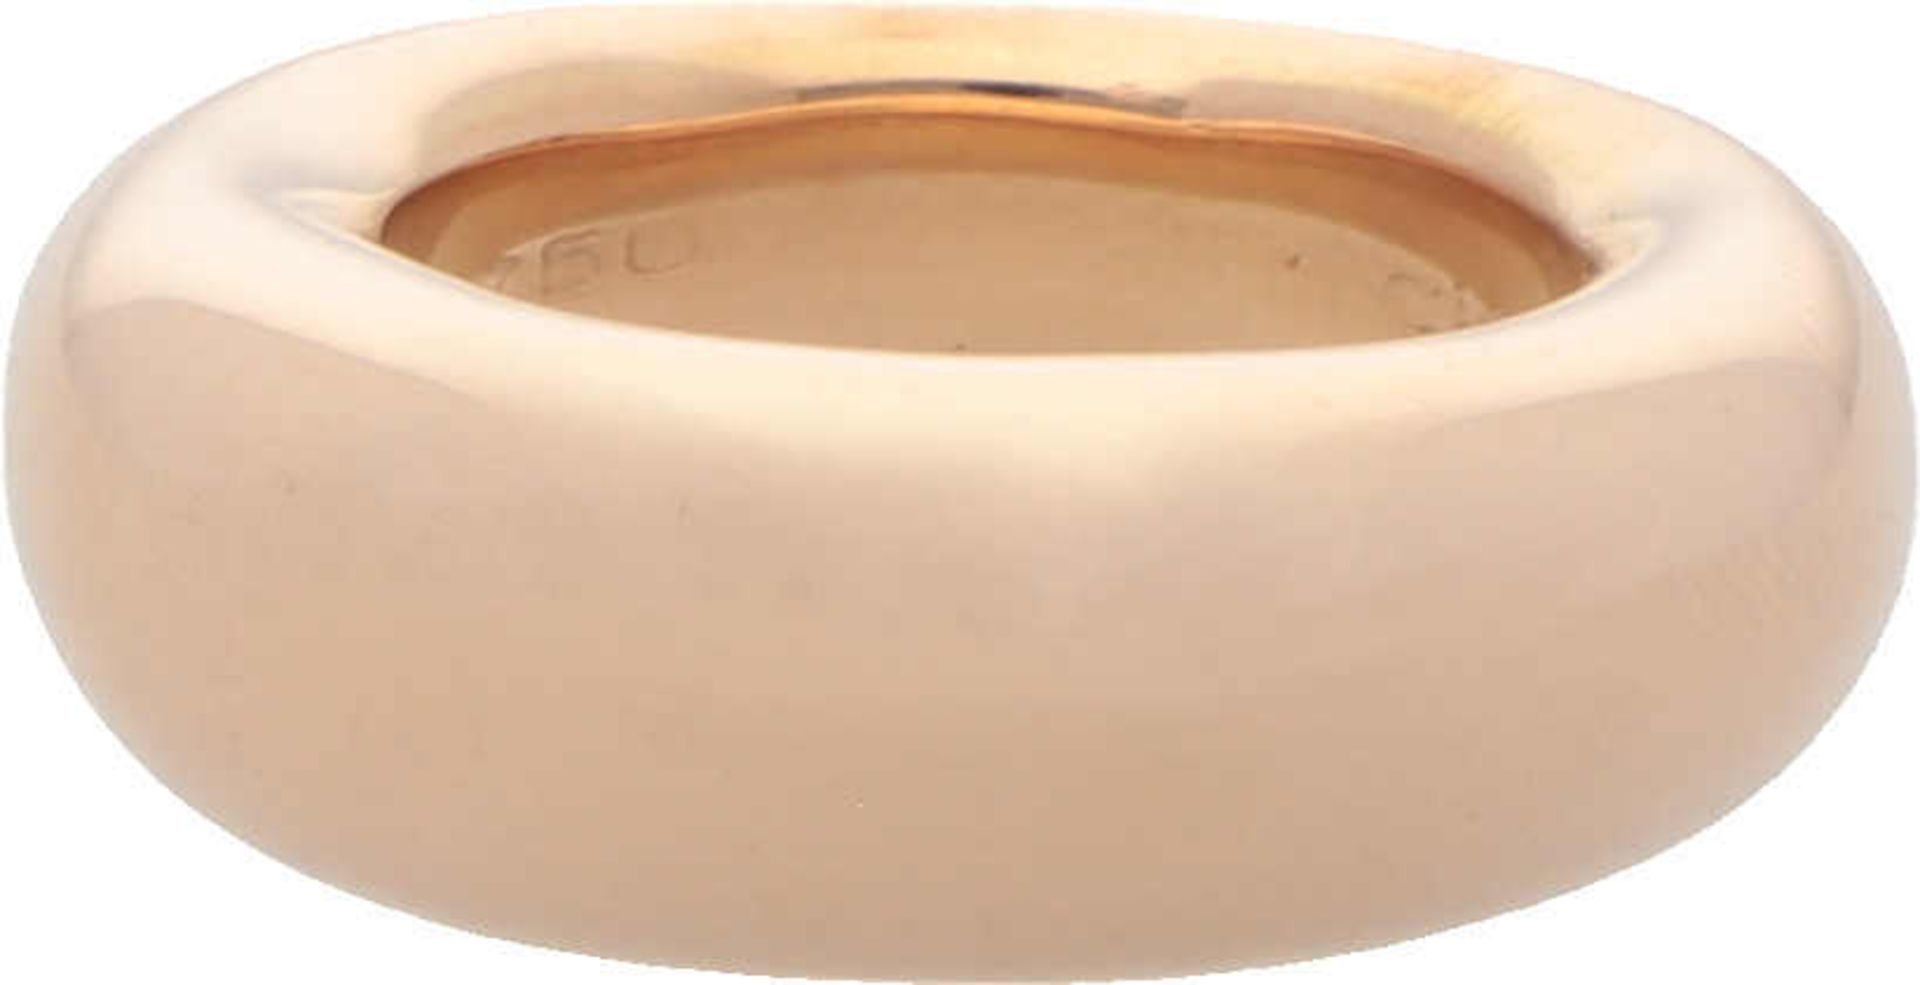 CHAUMET Ring Neuwertiger Ring in Roségold 18K edel bombiert und poliert, Ringgrösse 52, 12,2 g,